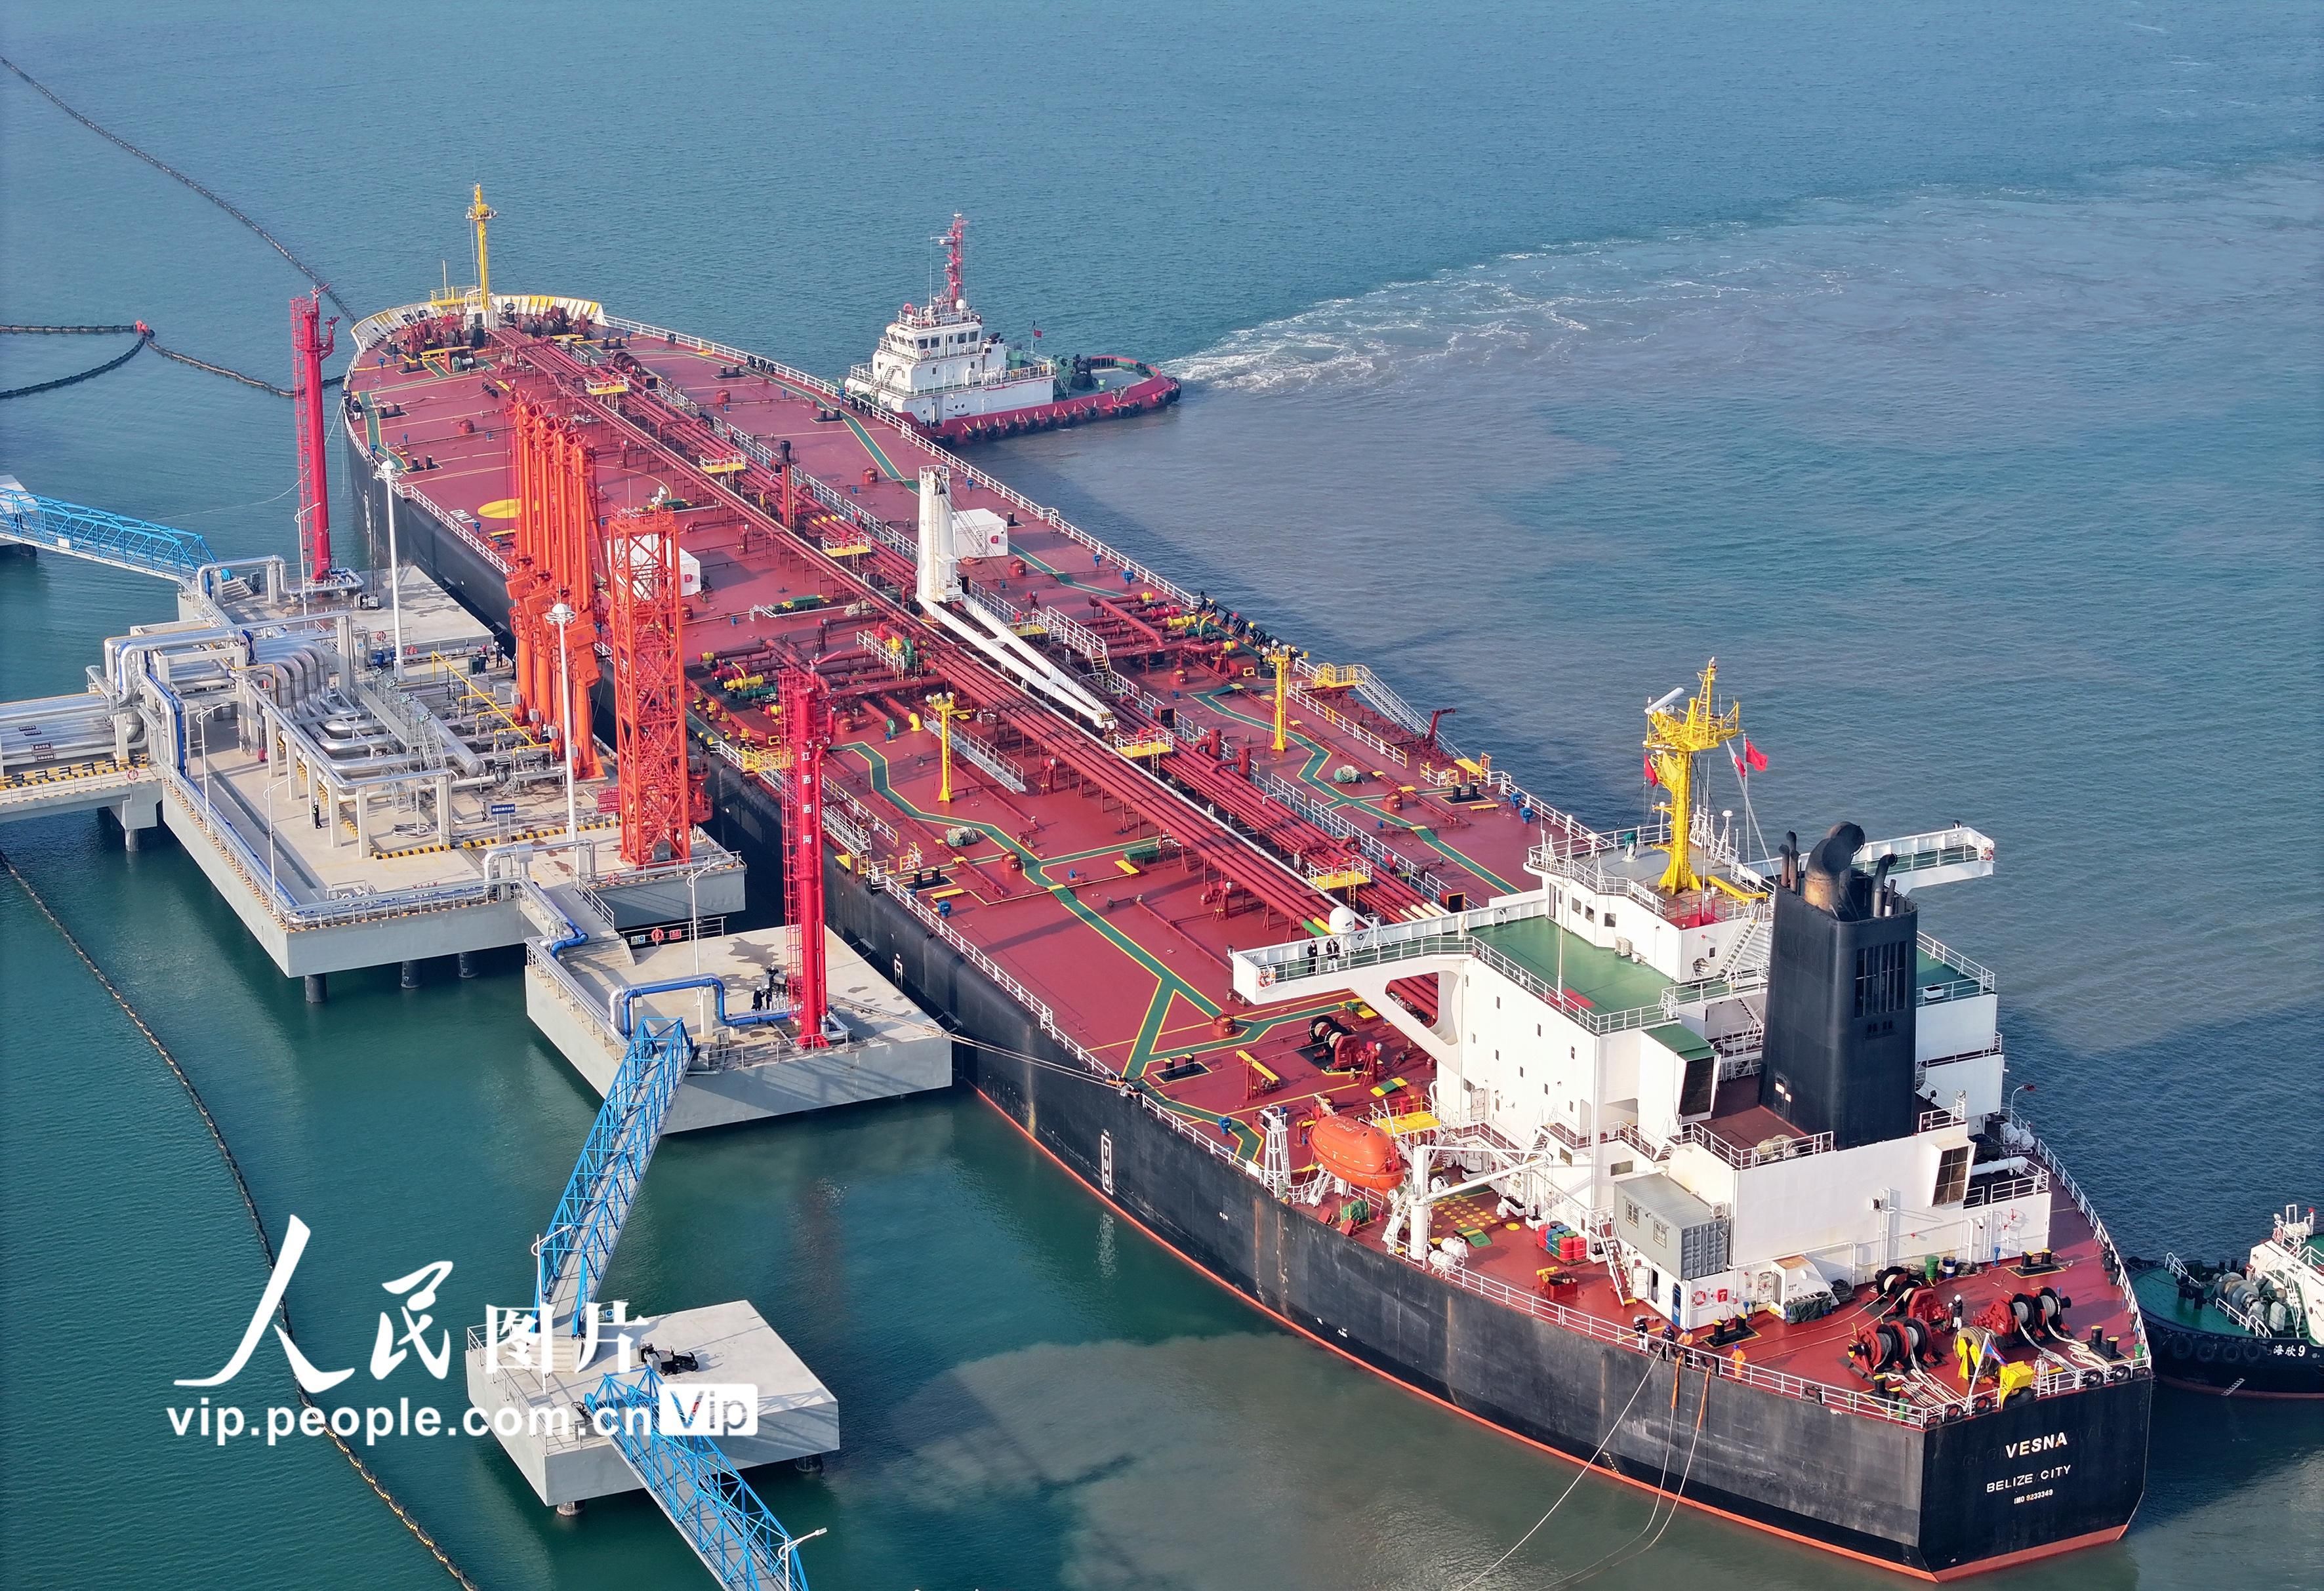 山东东营港首次靠泊10万吨级油轮